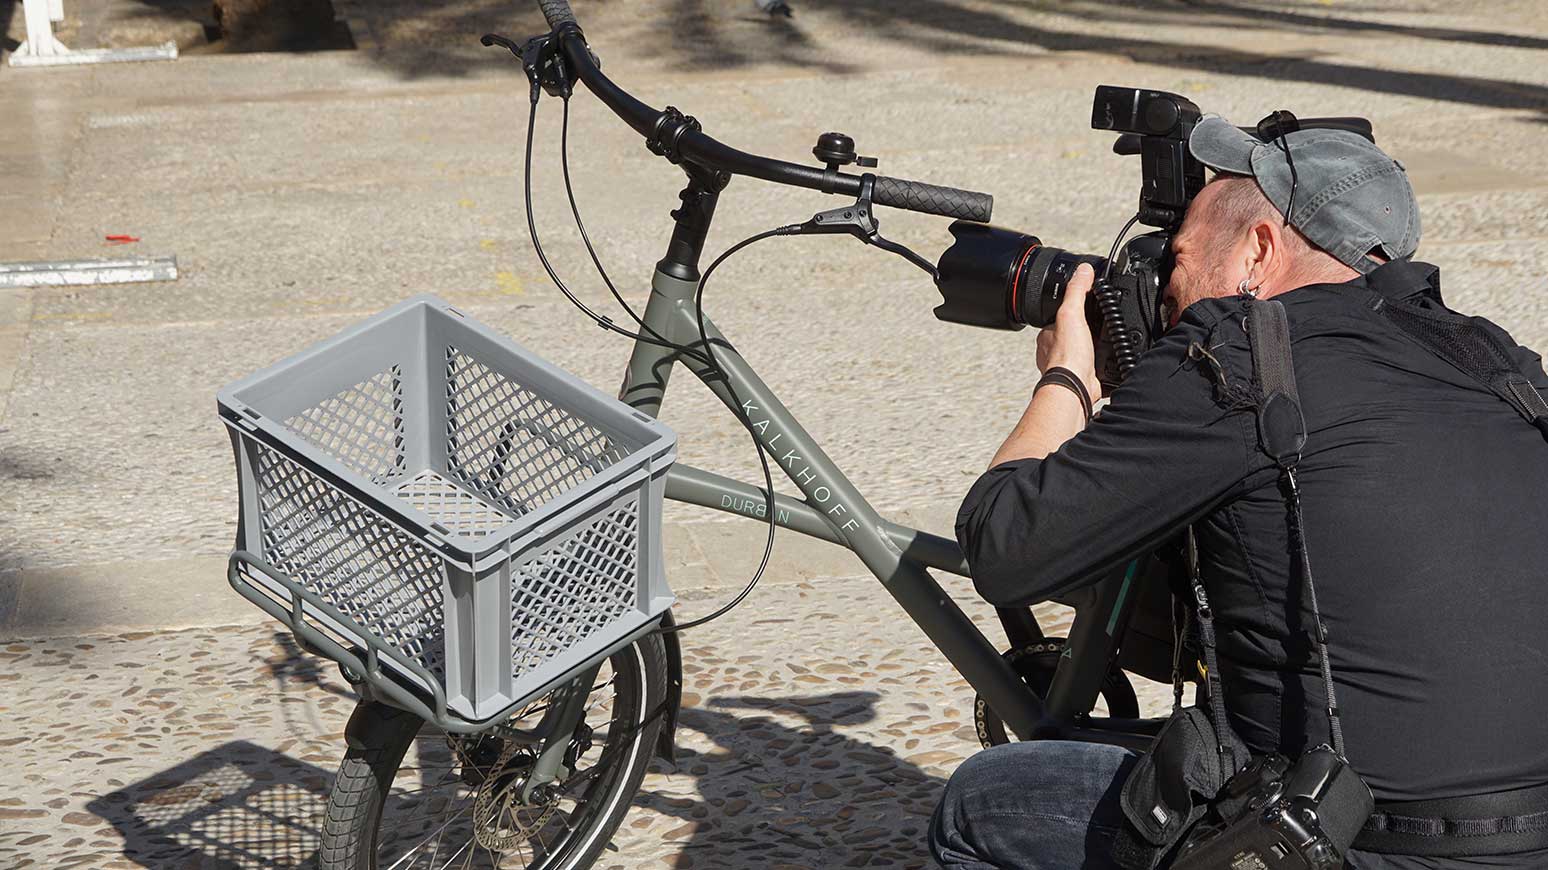 Im Focus des Fotografen: die Frontpartie des Kompaktrads, aufgesetzt auf den Fronträger: Transportkiste mit Euro-Format